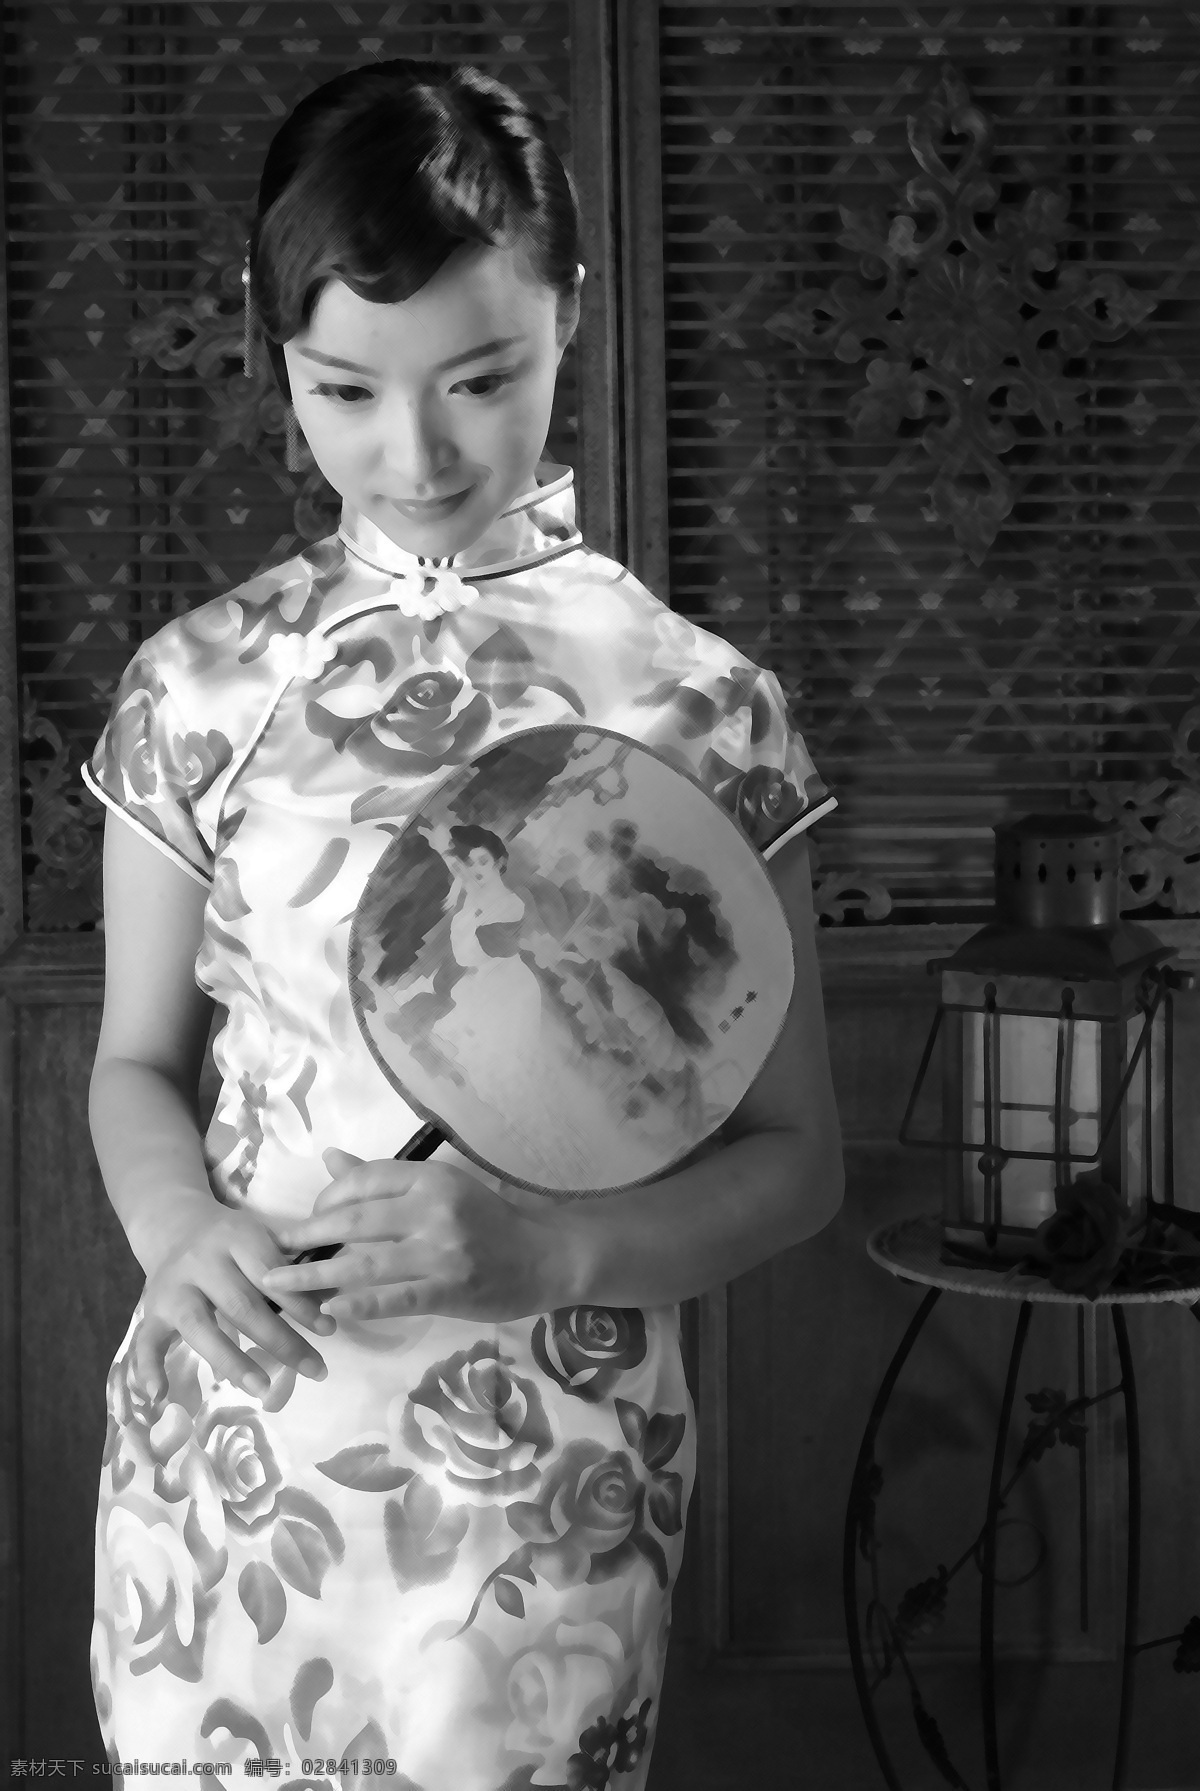 幻想海 美女 室内摄影 照片 写真 苹果 背景 书 笑容 指甲 大眼睛 淡妆 扇子 中国风 人物摄影 人物图库